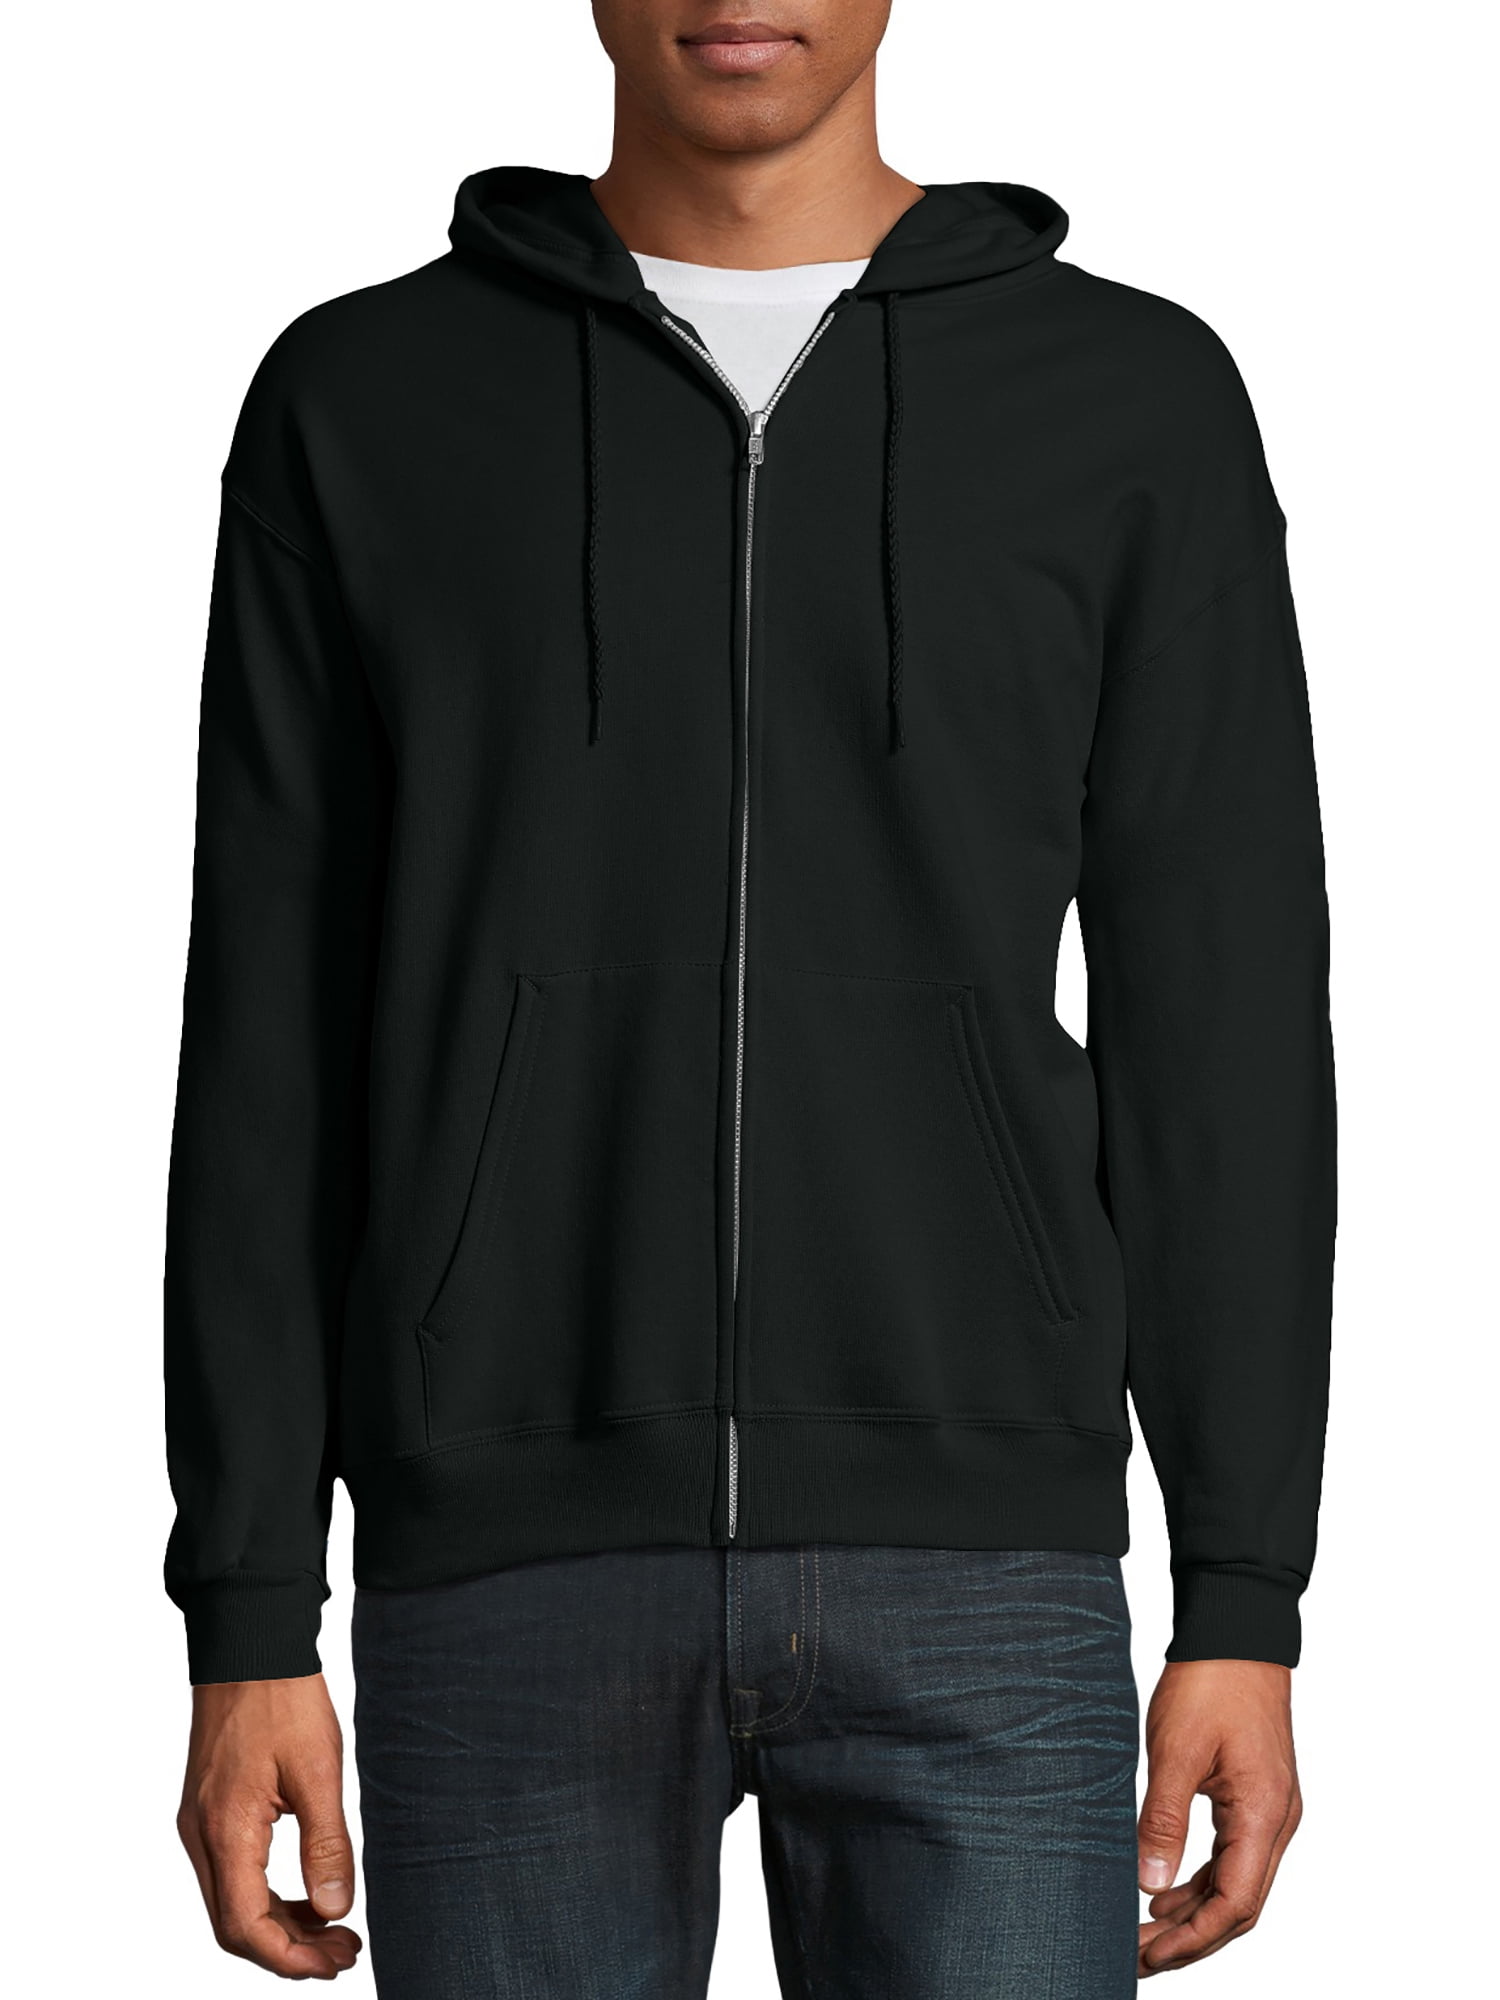 Hanes - Hanes Men's EcoSmart Fleece Full Zip Hooded Jacket - Walmart.com